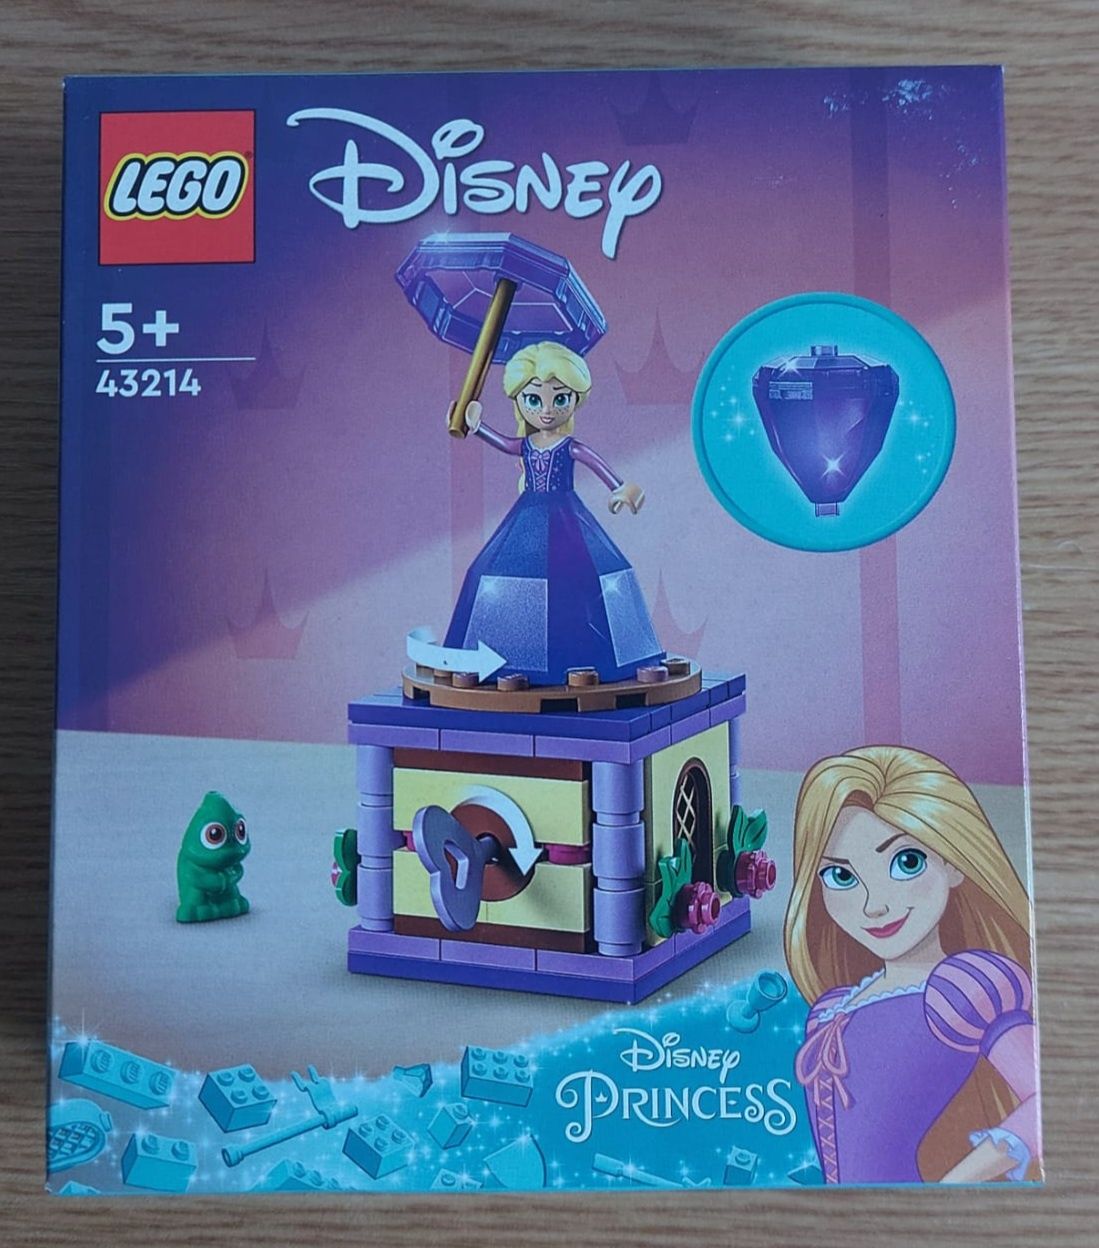 Wirująca Roszpunka (43214), LEGO Disney, 5+